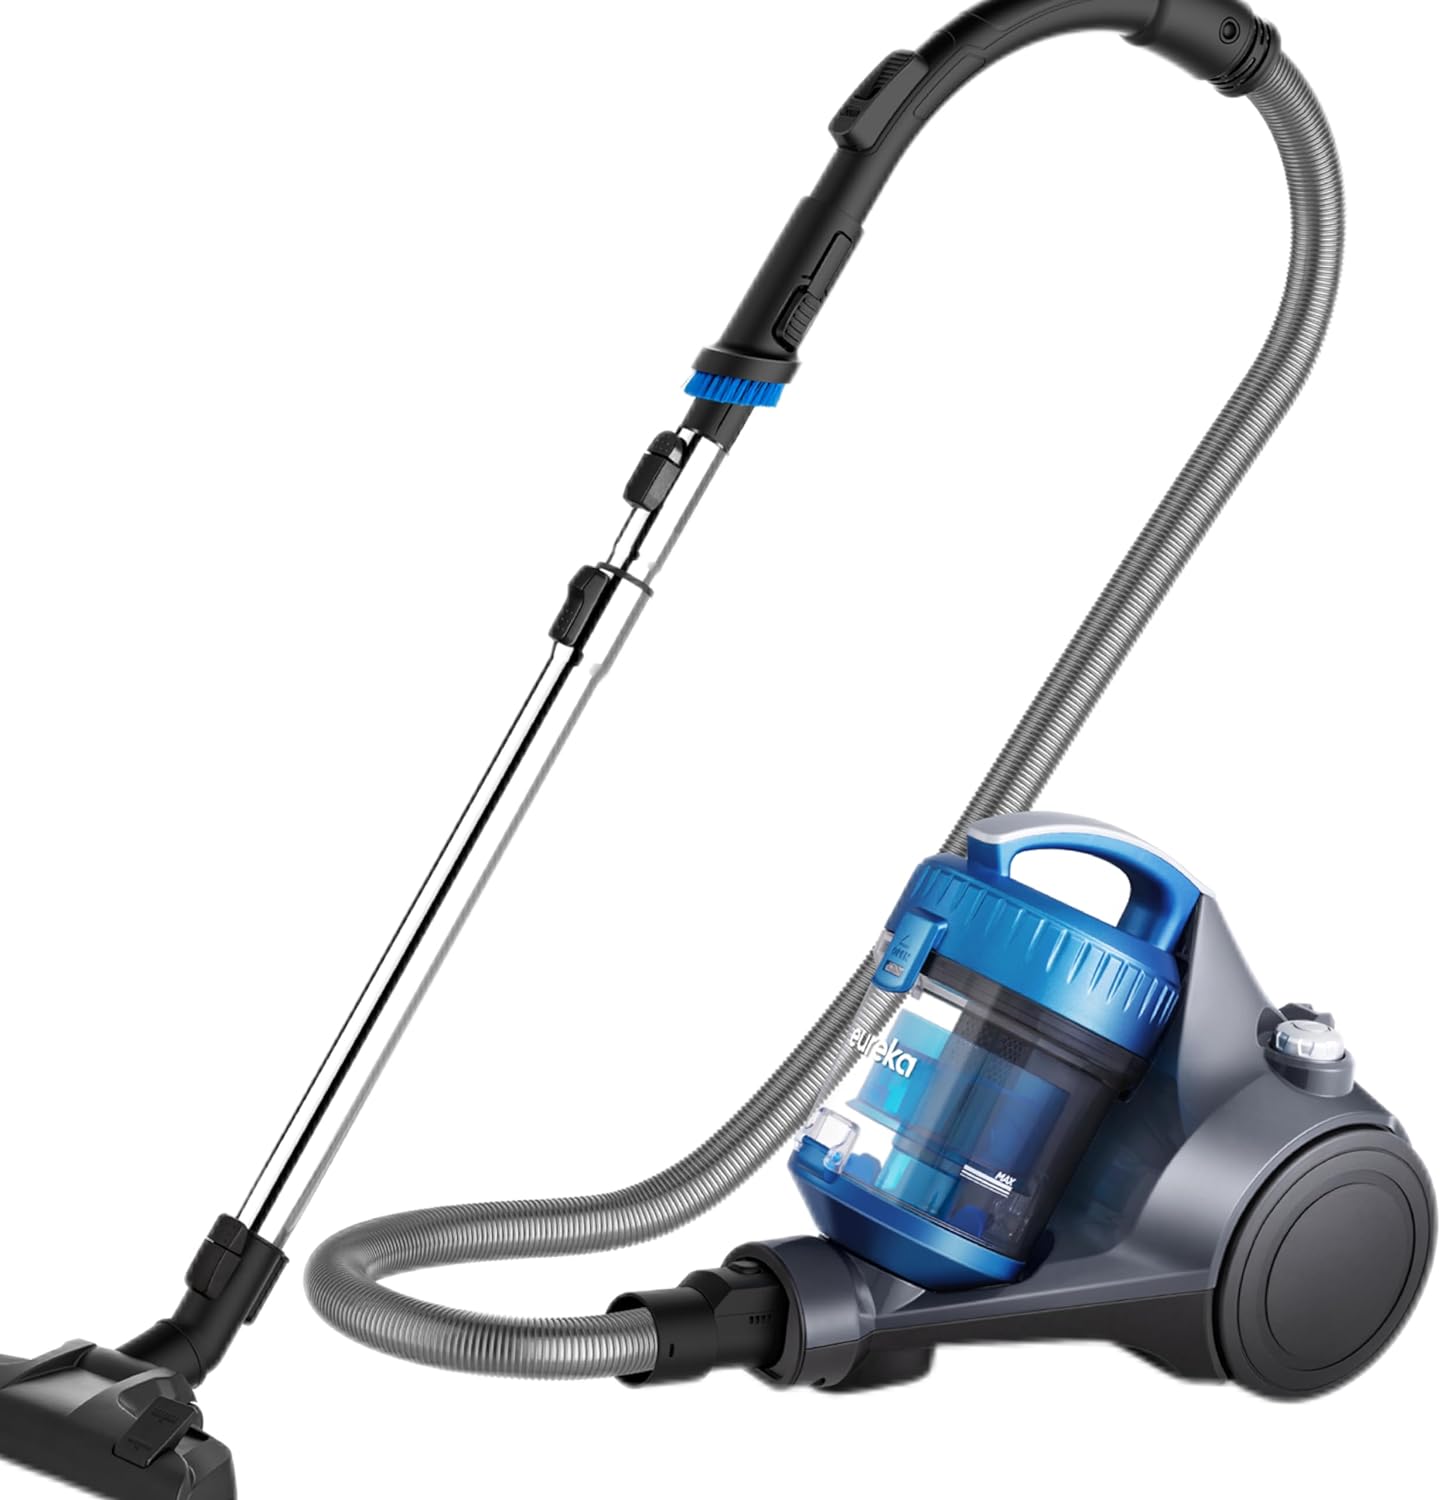 Best Vacuum Under $200